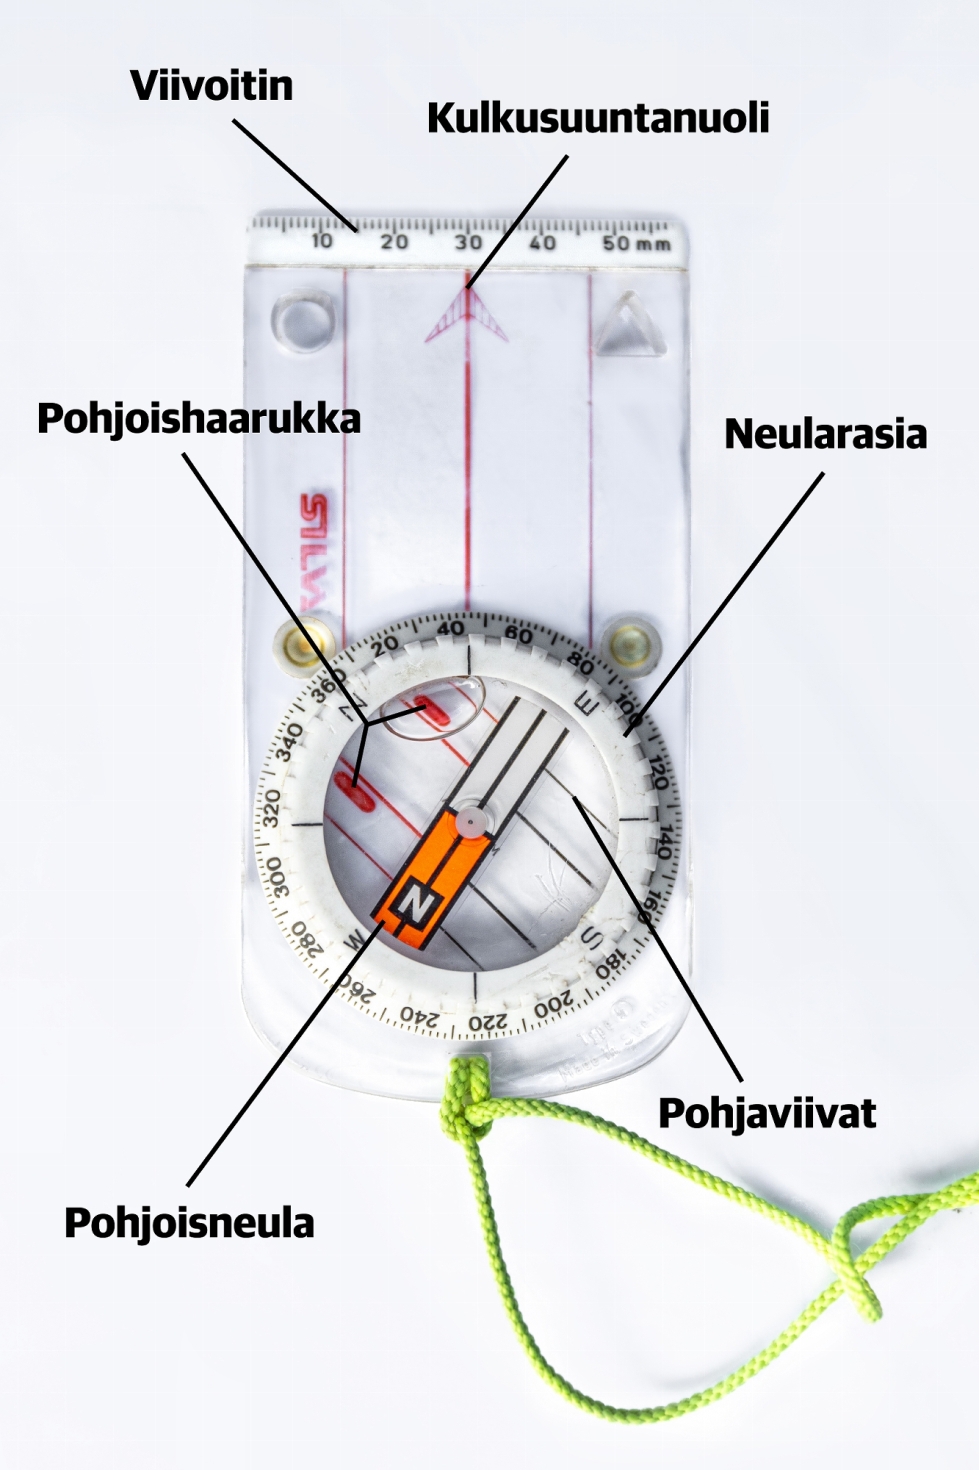 Kompassin osat ja merkinnät, kuvassa perinteinen levykompassi.